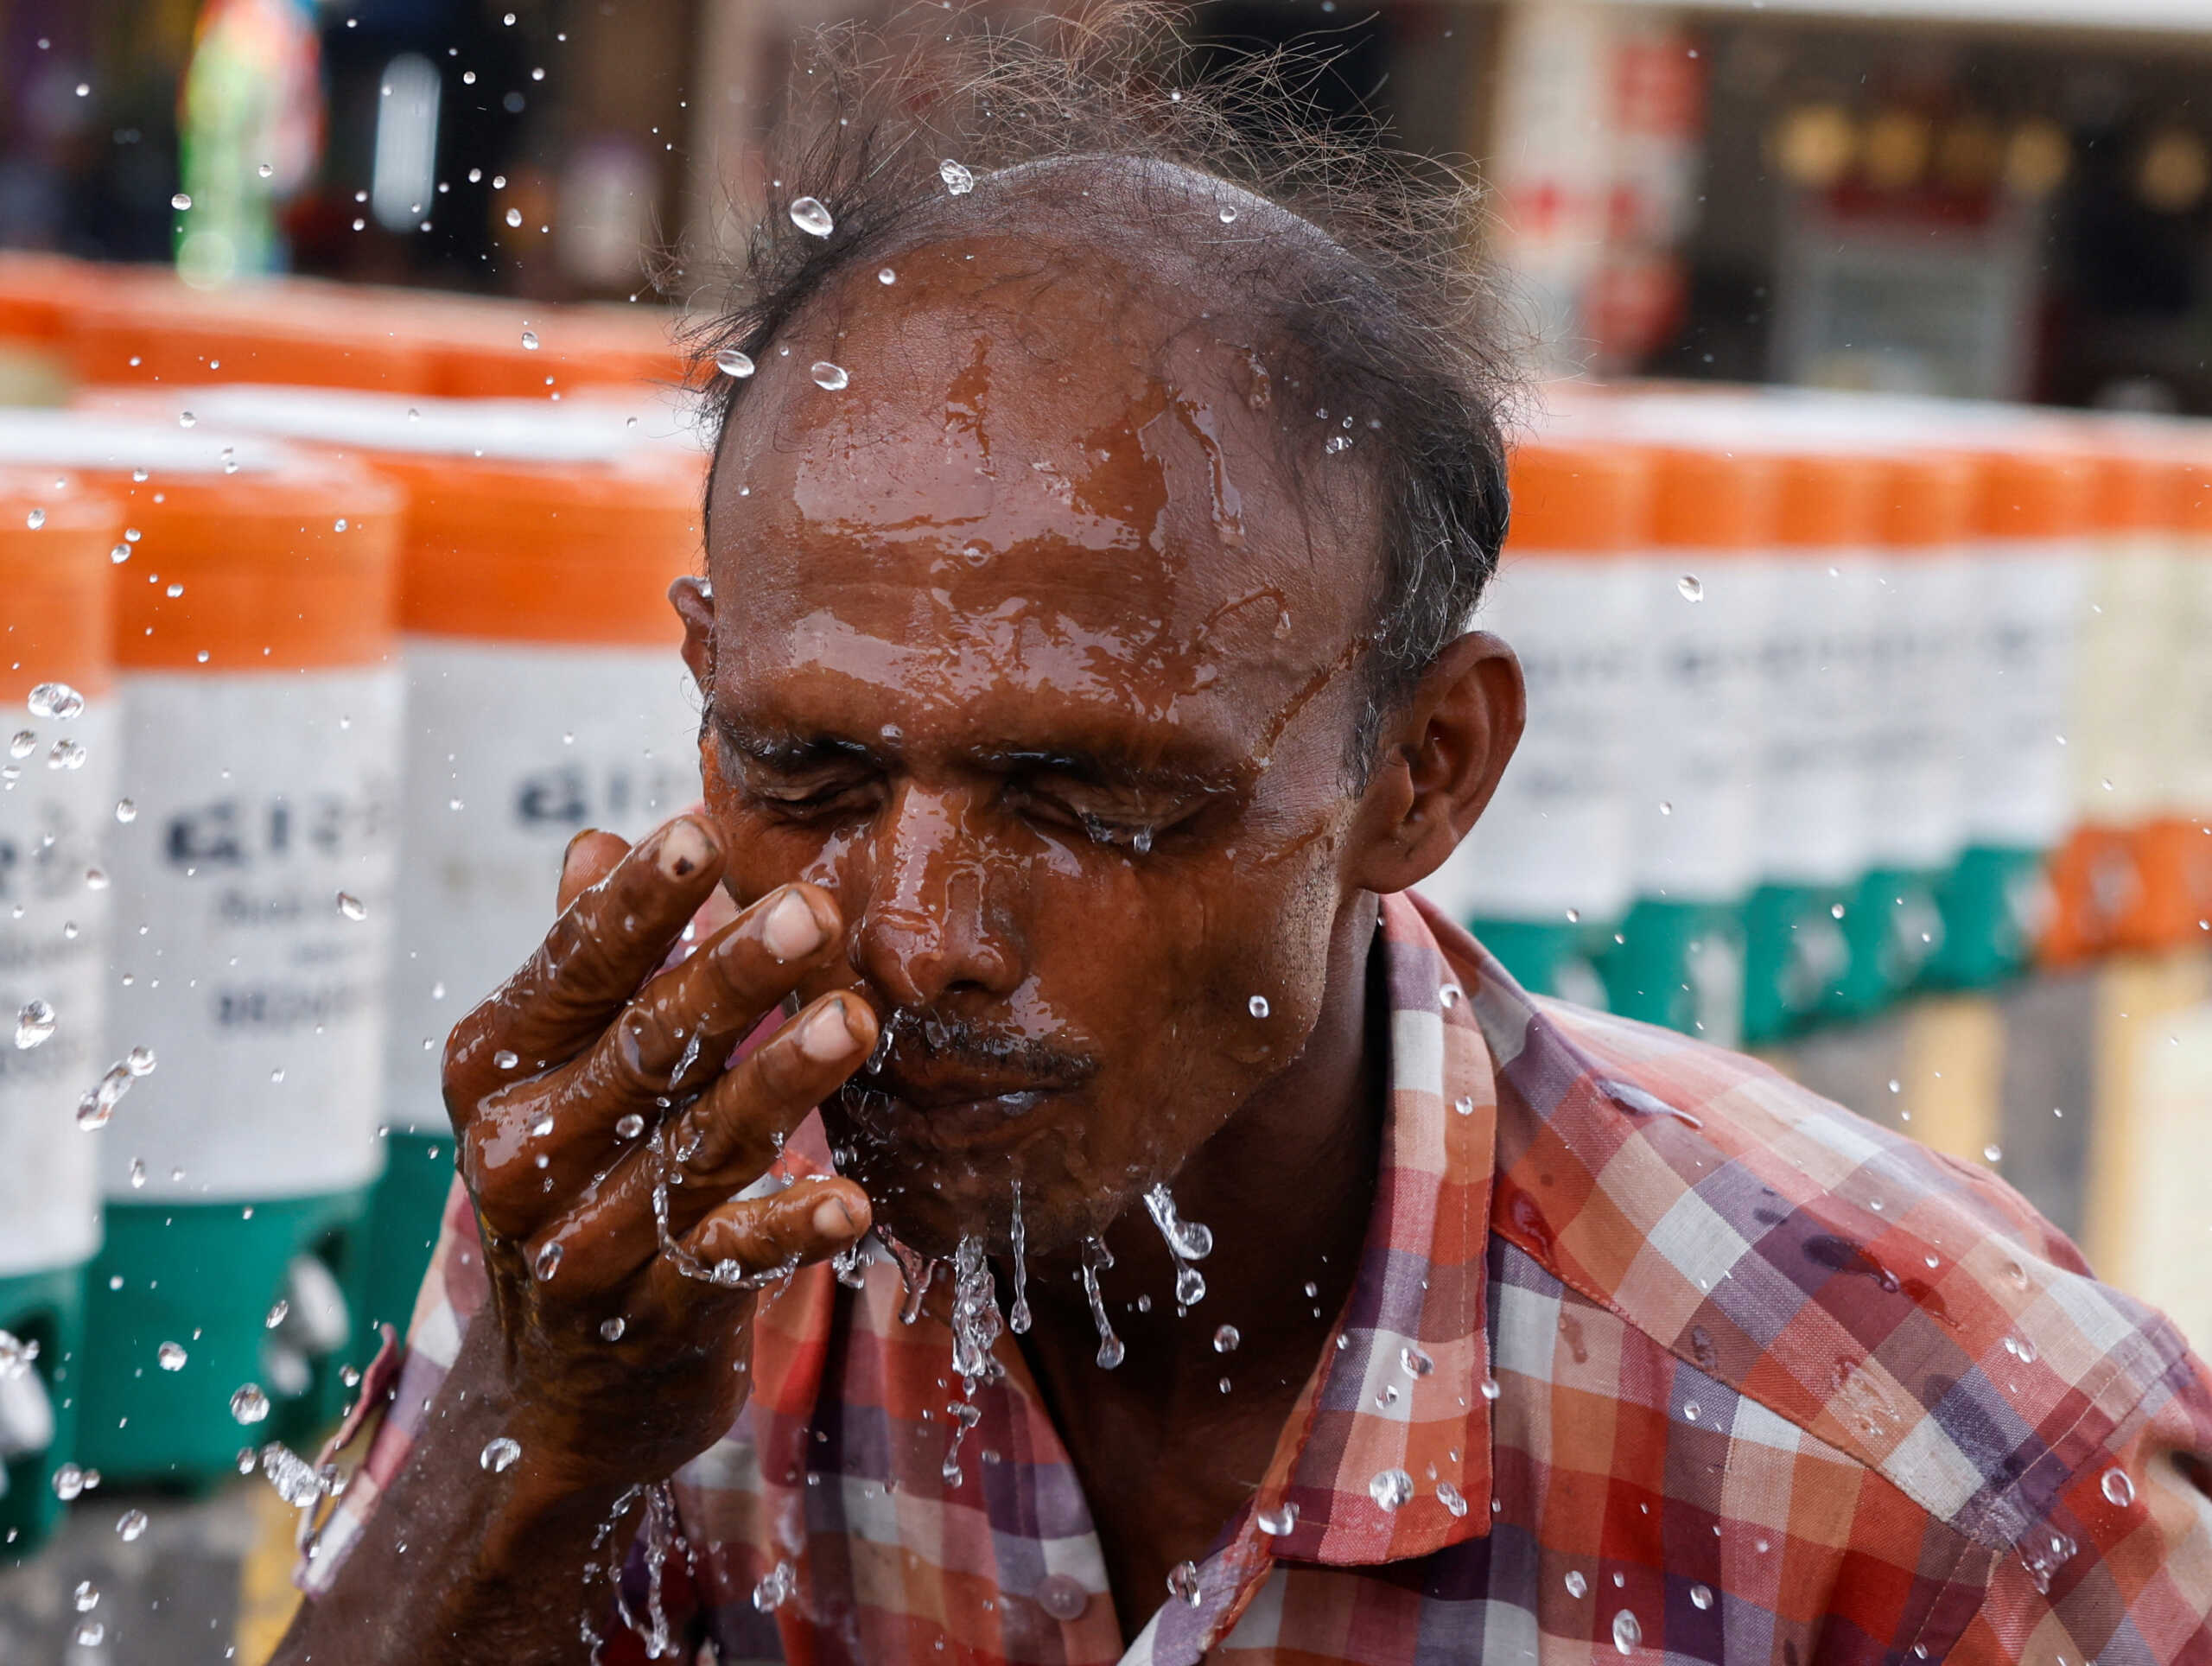 Θερμοκρασία ρεκόρ 52,3 βαθμών στο Νέο Δελχί στην Ινδία